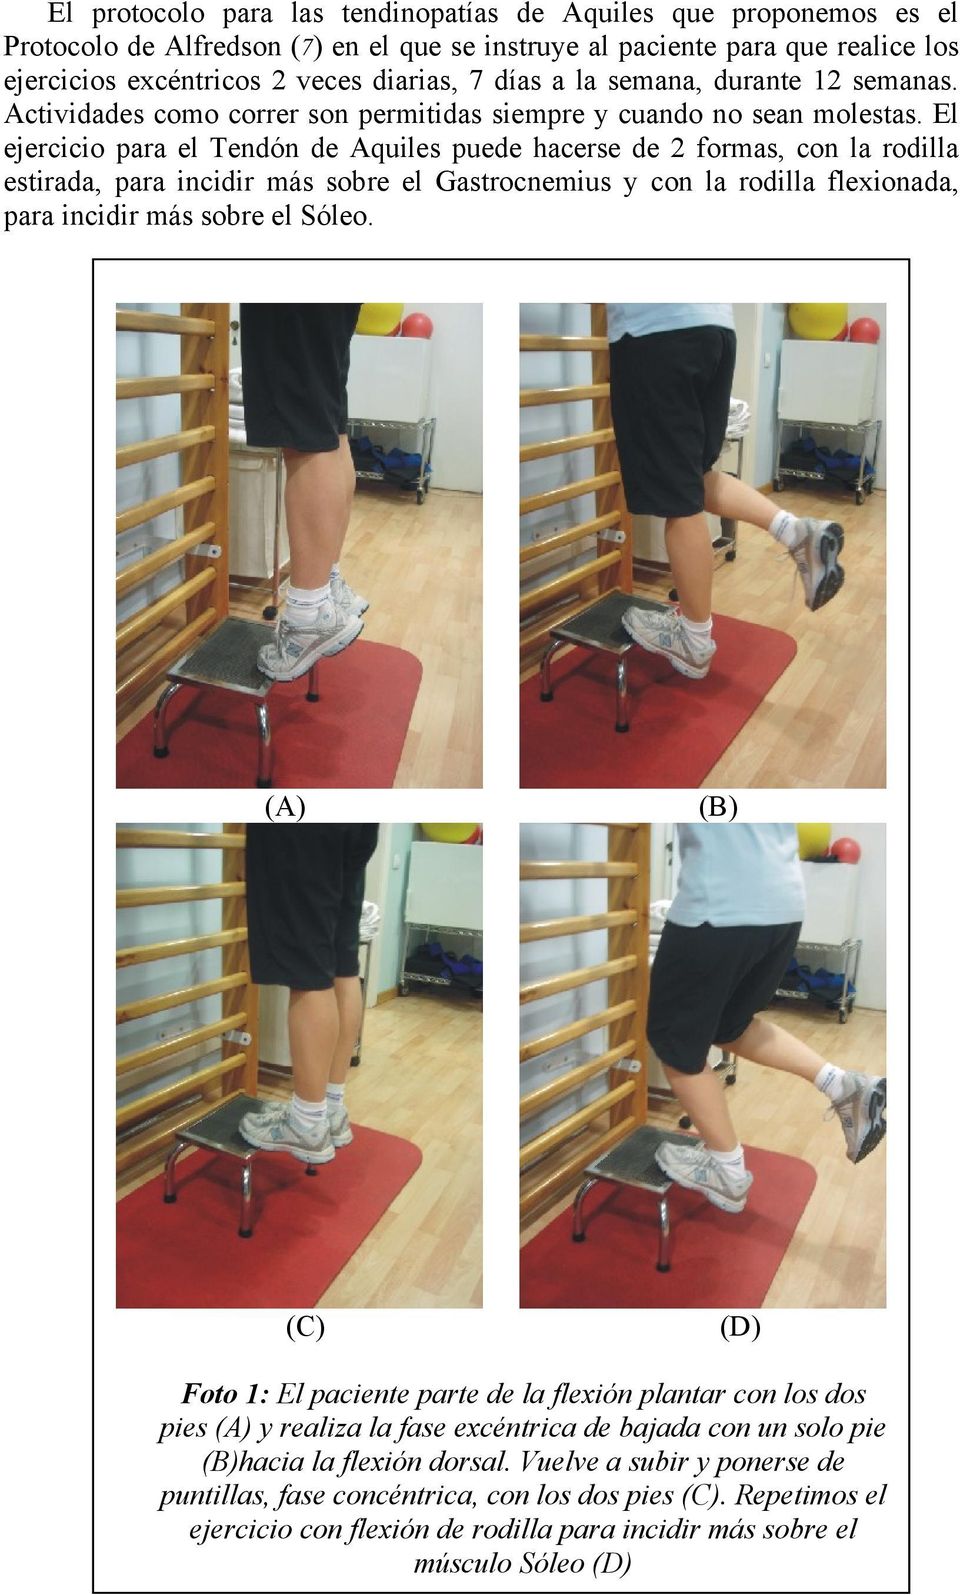 El ejercicio para el Tendón de Aquiles puede hacerse de 2 formas, con la rodilla estirada, para incidir más sobre el Gastrocnemius y con la rodilla flexionada, para incidir más sobre el Sóleo.